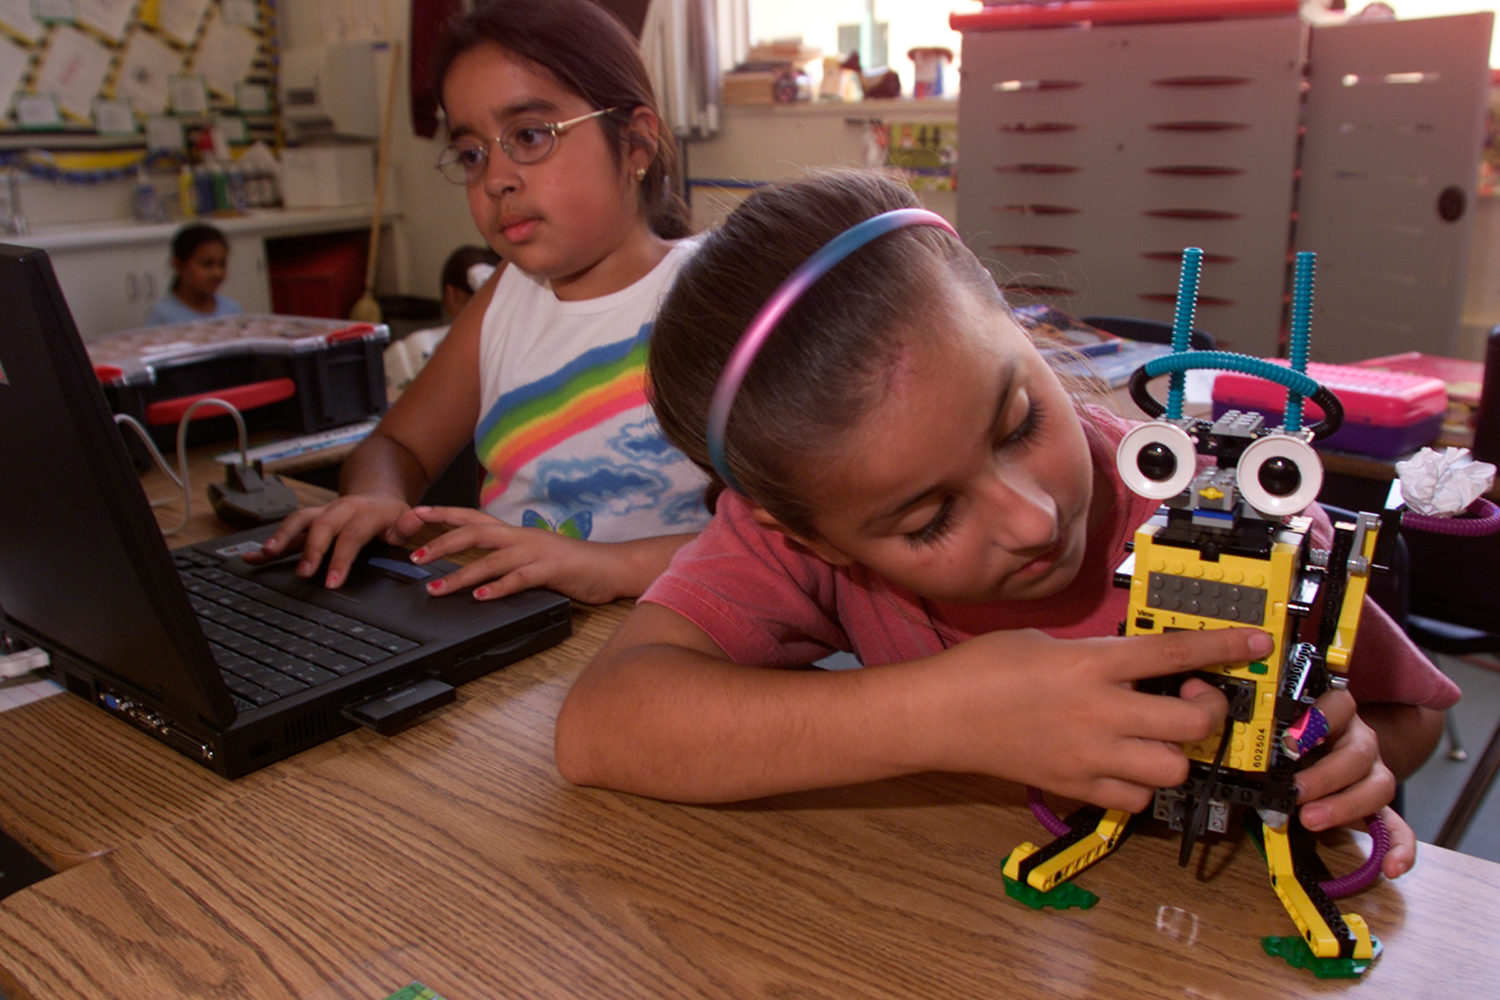 RESULTADOS MENSURÁVEIS - Estudantes de robótica tem melhor desempenho nas tarefas escolares -